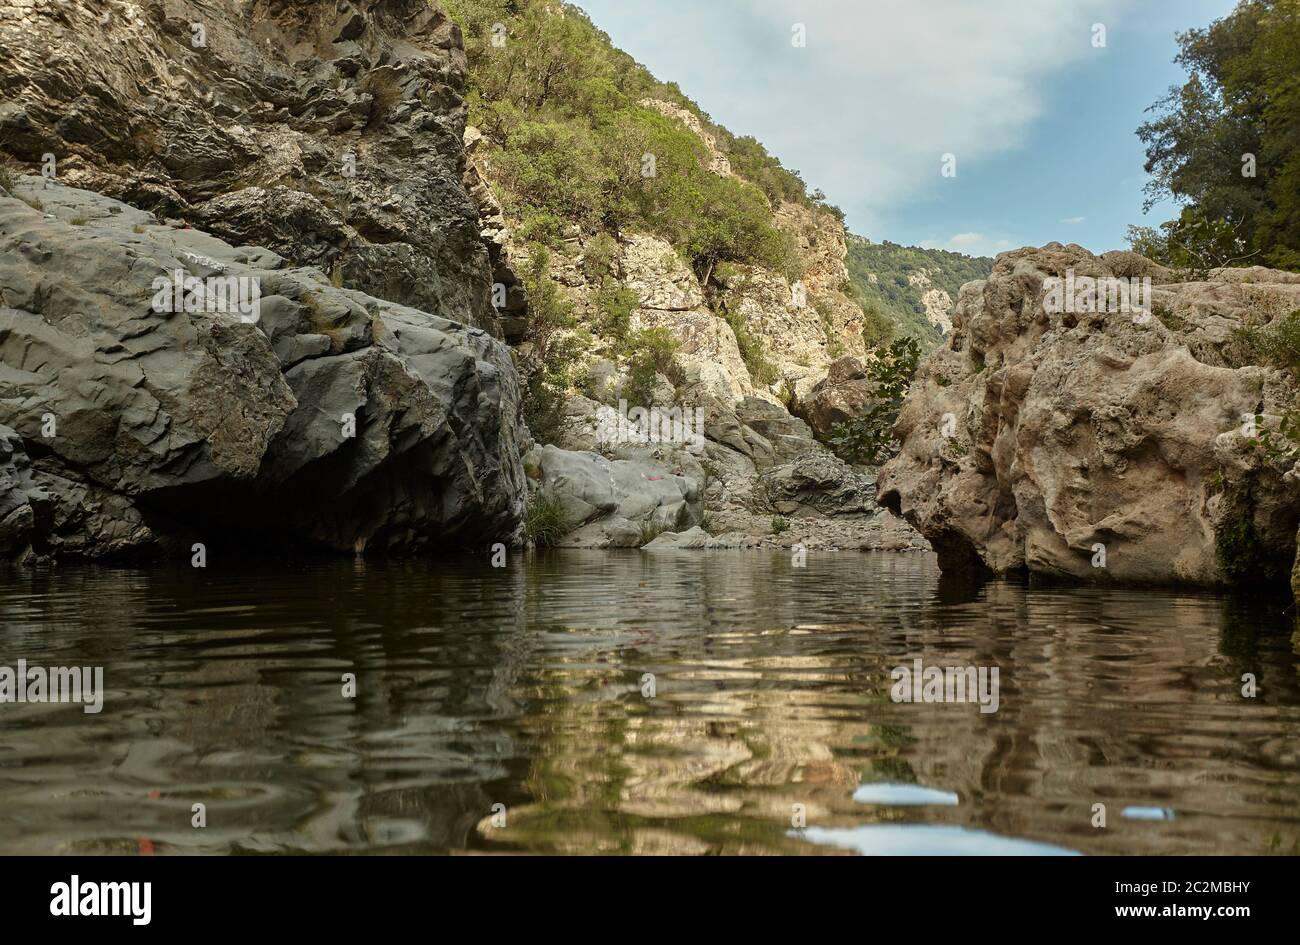 Acqua naturale corso in mezzo alla montagna nel villaggio di Sa Stiddiosa nel centro della Sardegna. Foto Stock